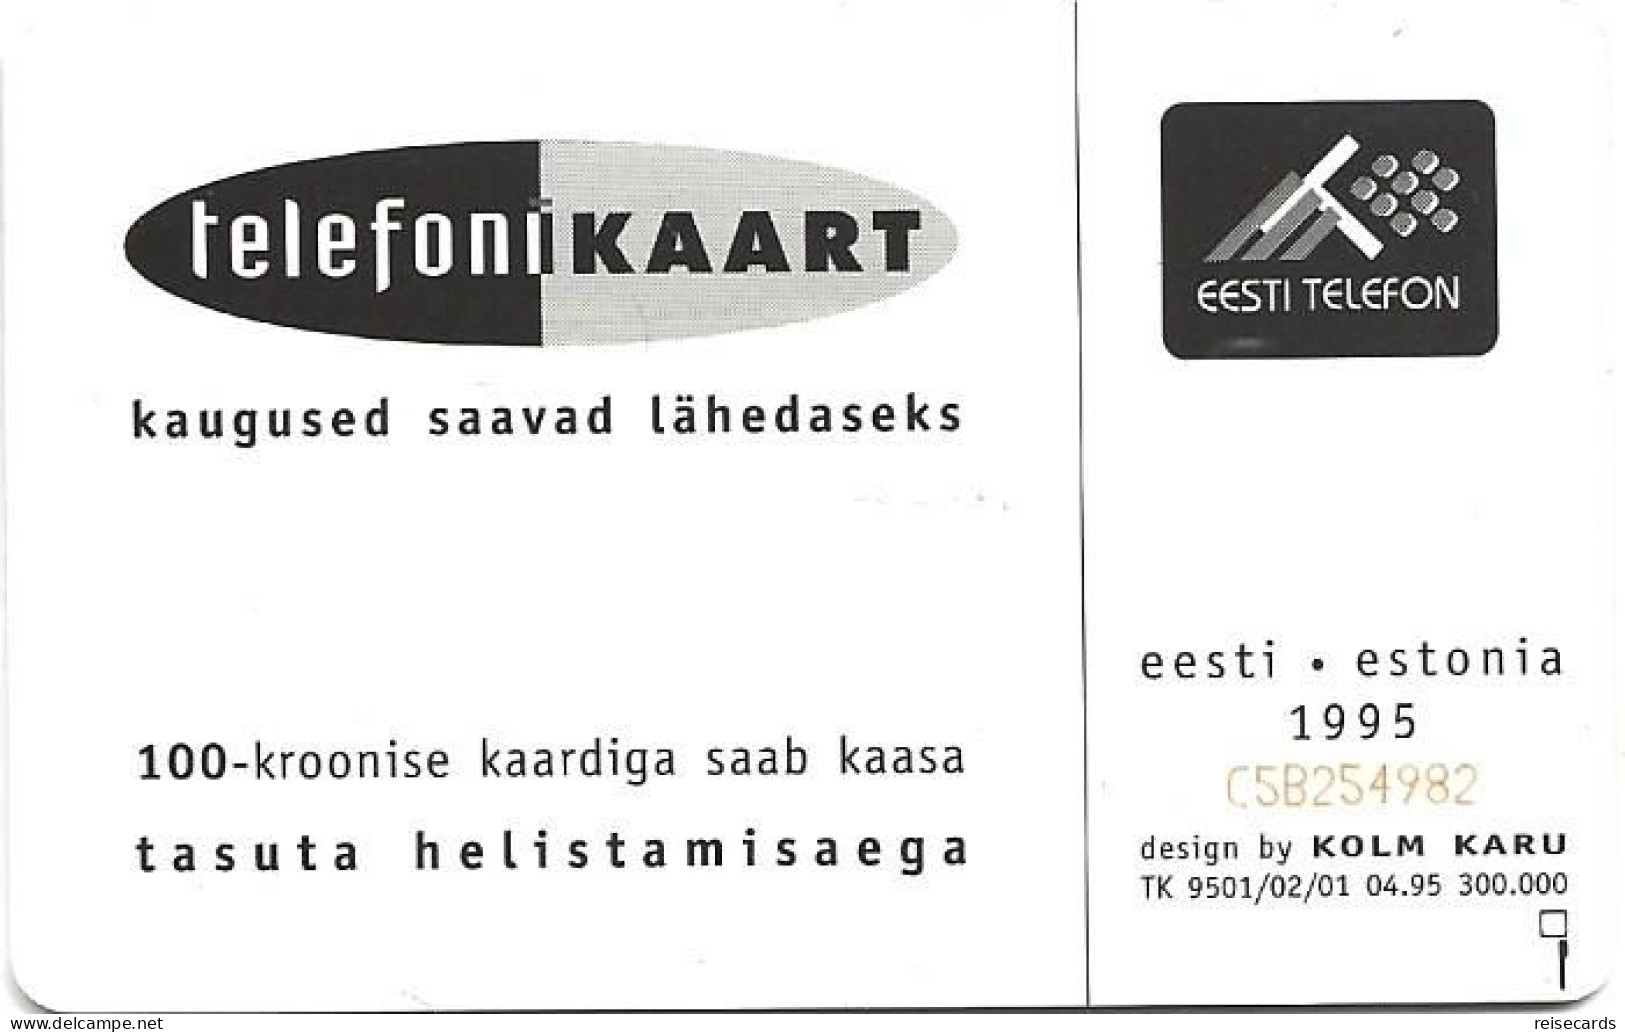 Estonia: Eesti Telefon 1995 Designer Kolm Karu - Estonia